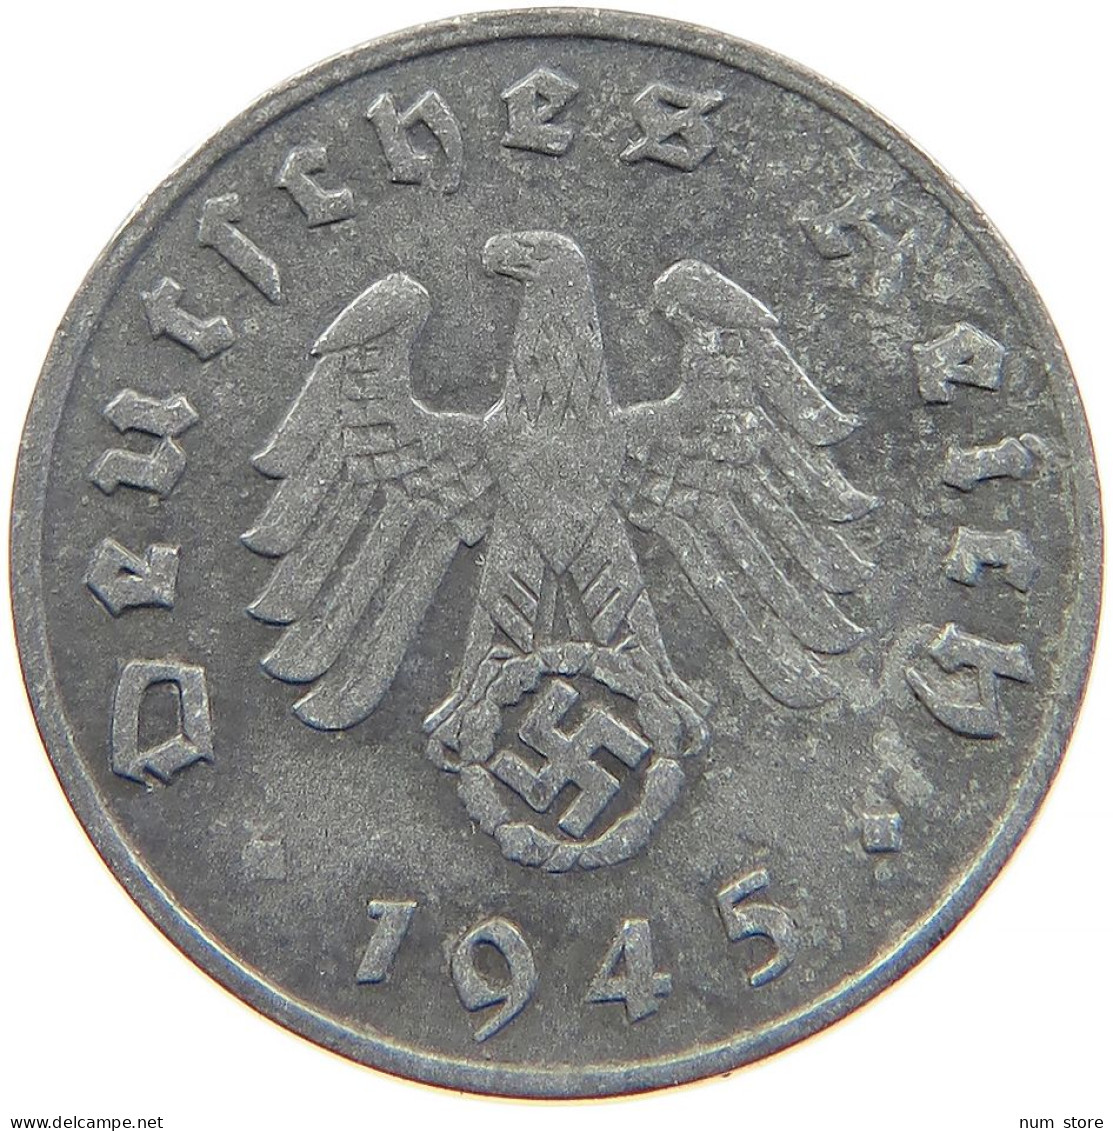 GERMANY 1 PFENNIG 1945 E RARE #t033 0235 - 1 Reichspfennig